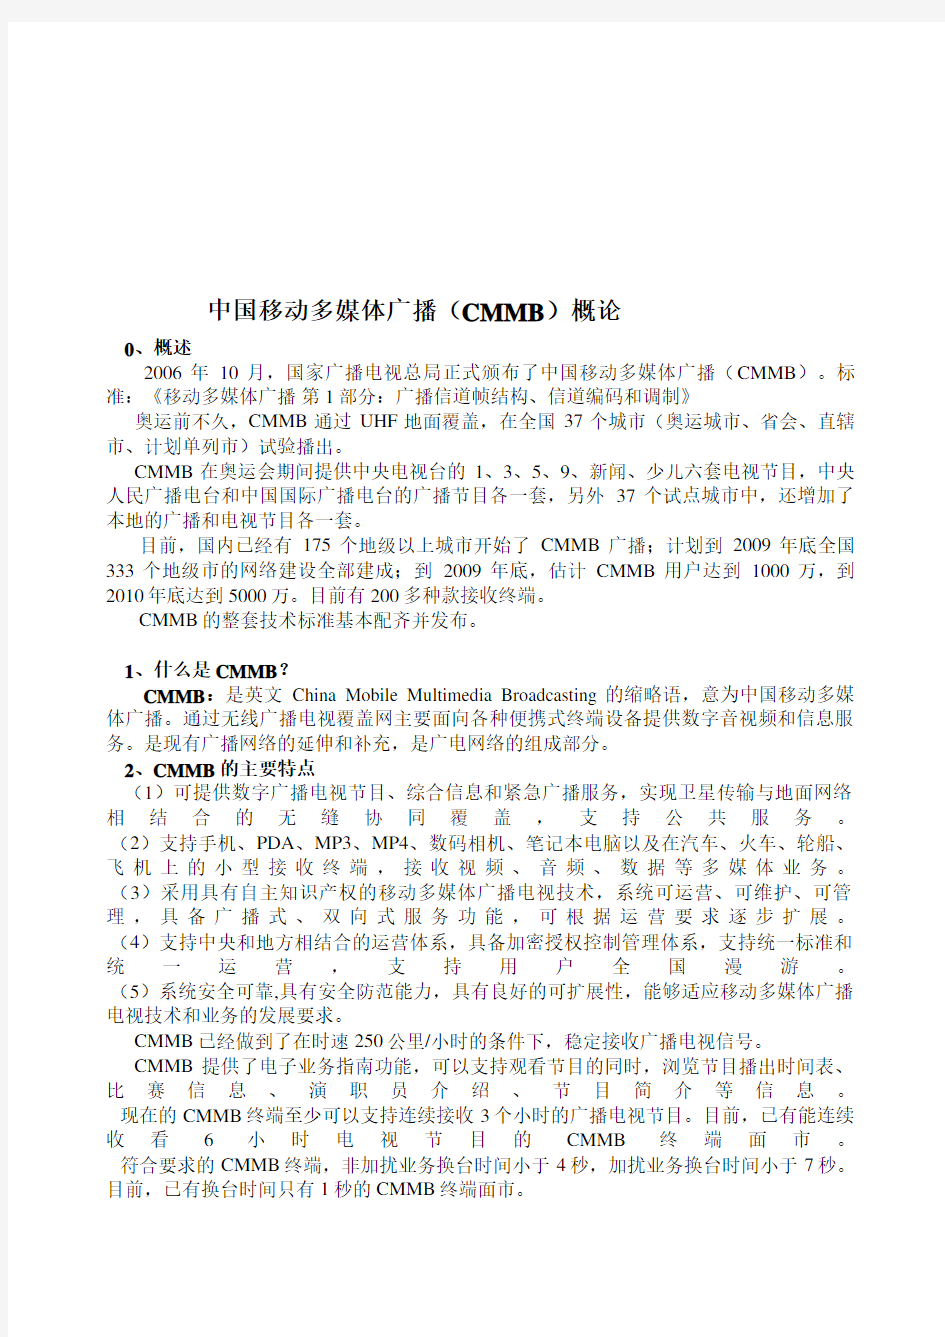 中国移动多媒体广播(CMMB)概论(doc 10页)